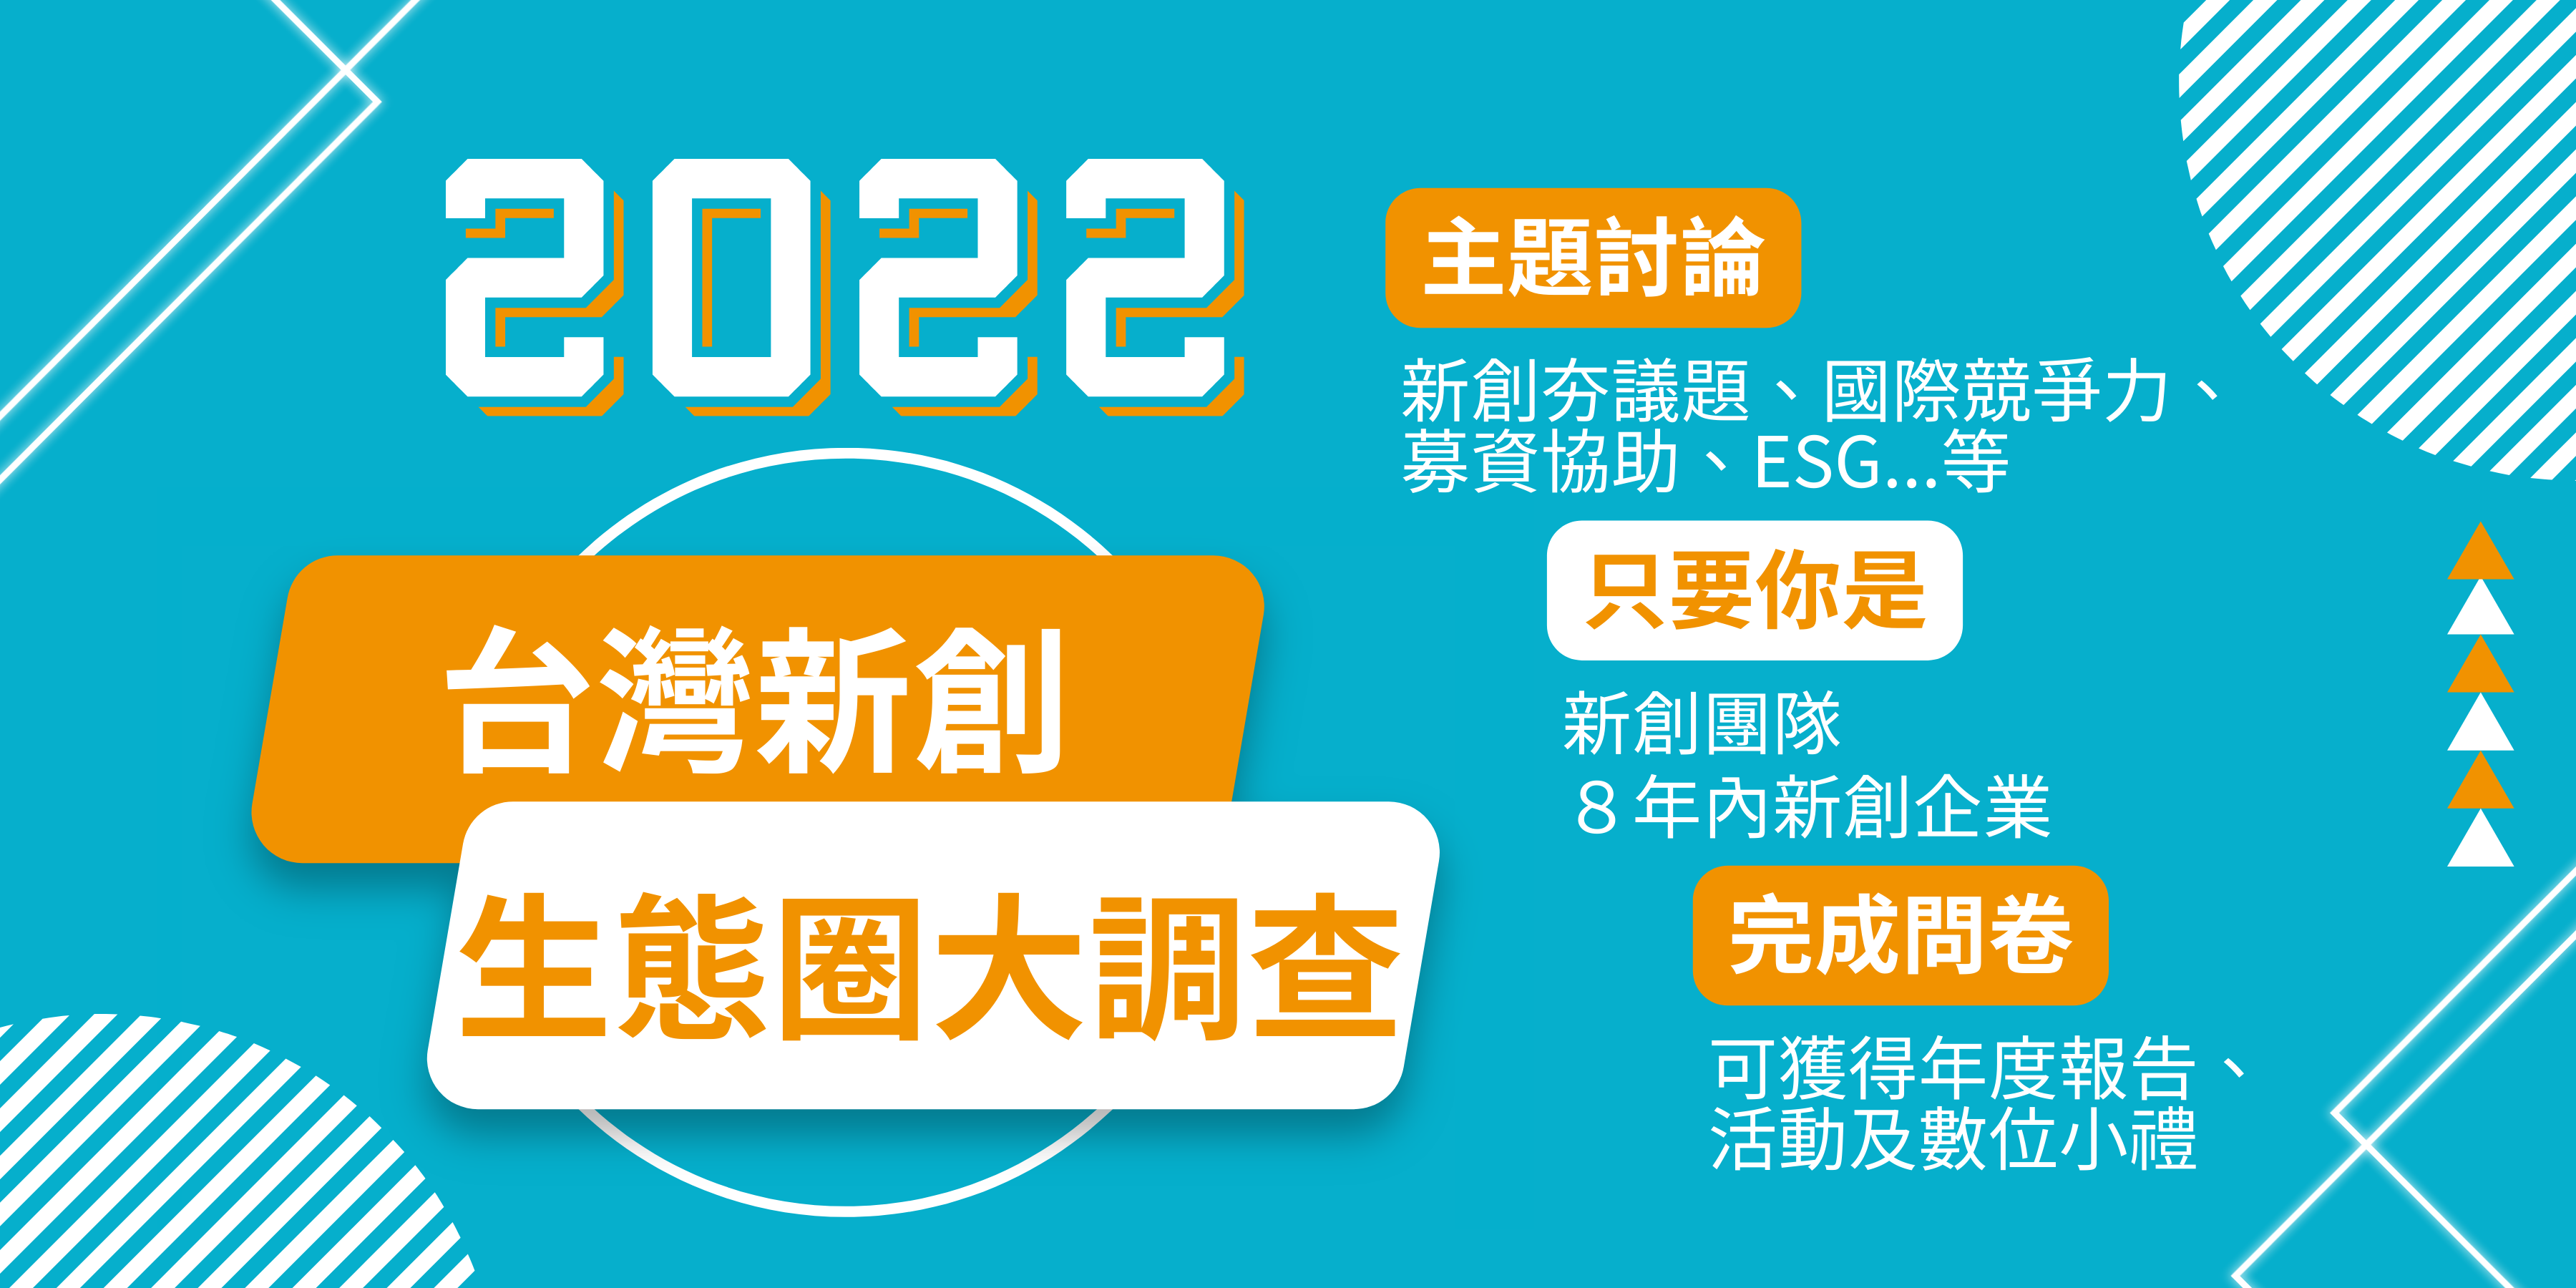 創業觀點-2022台灣新創生態圈大調查正式啟動 主要照片